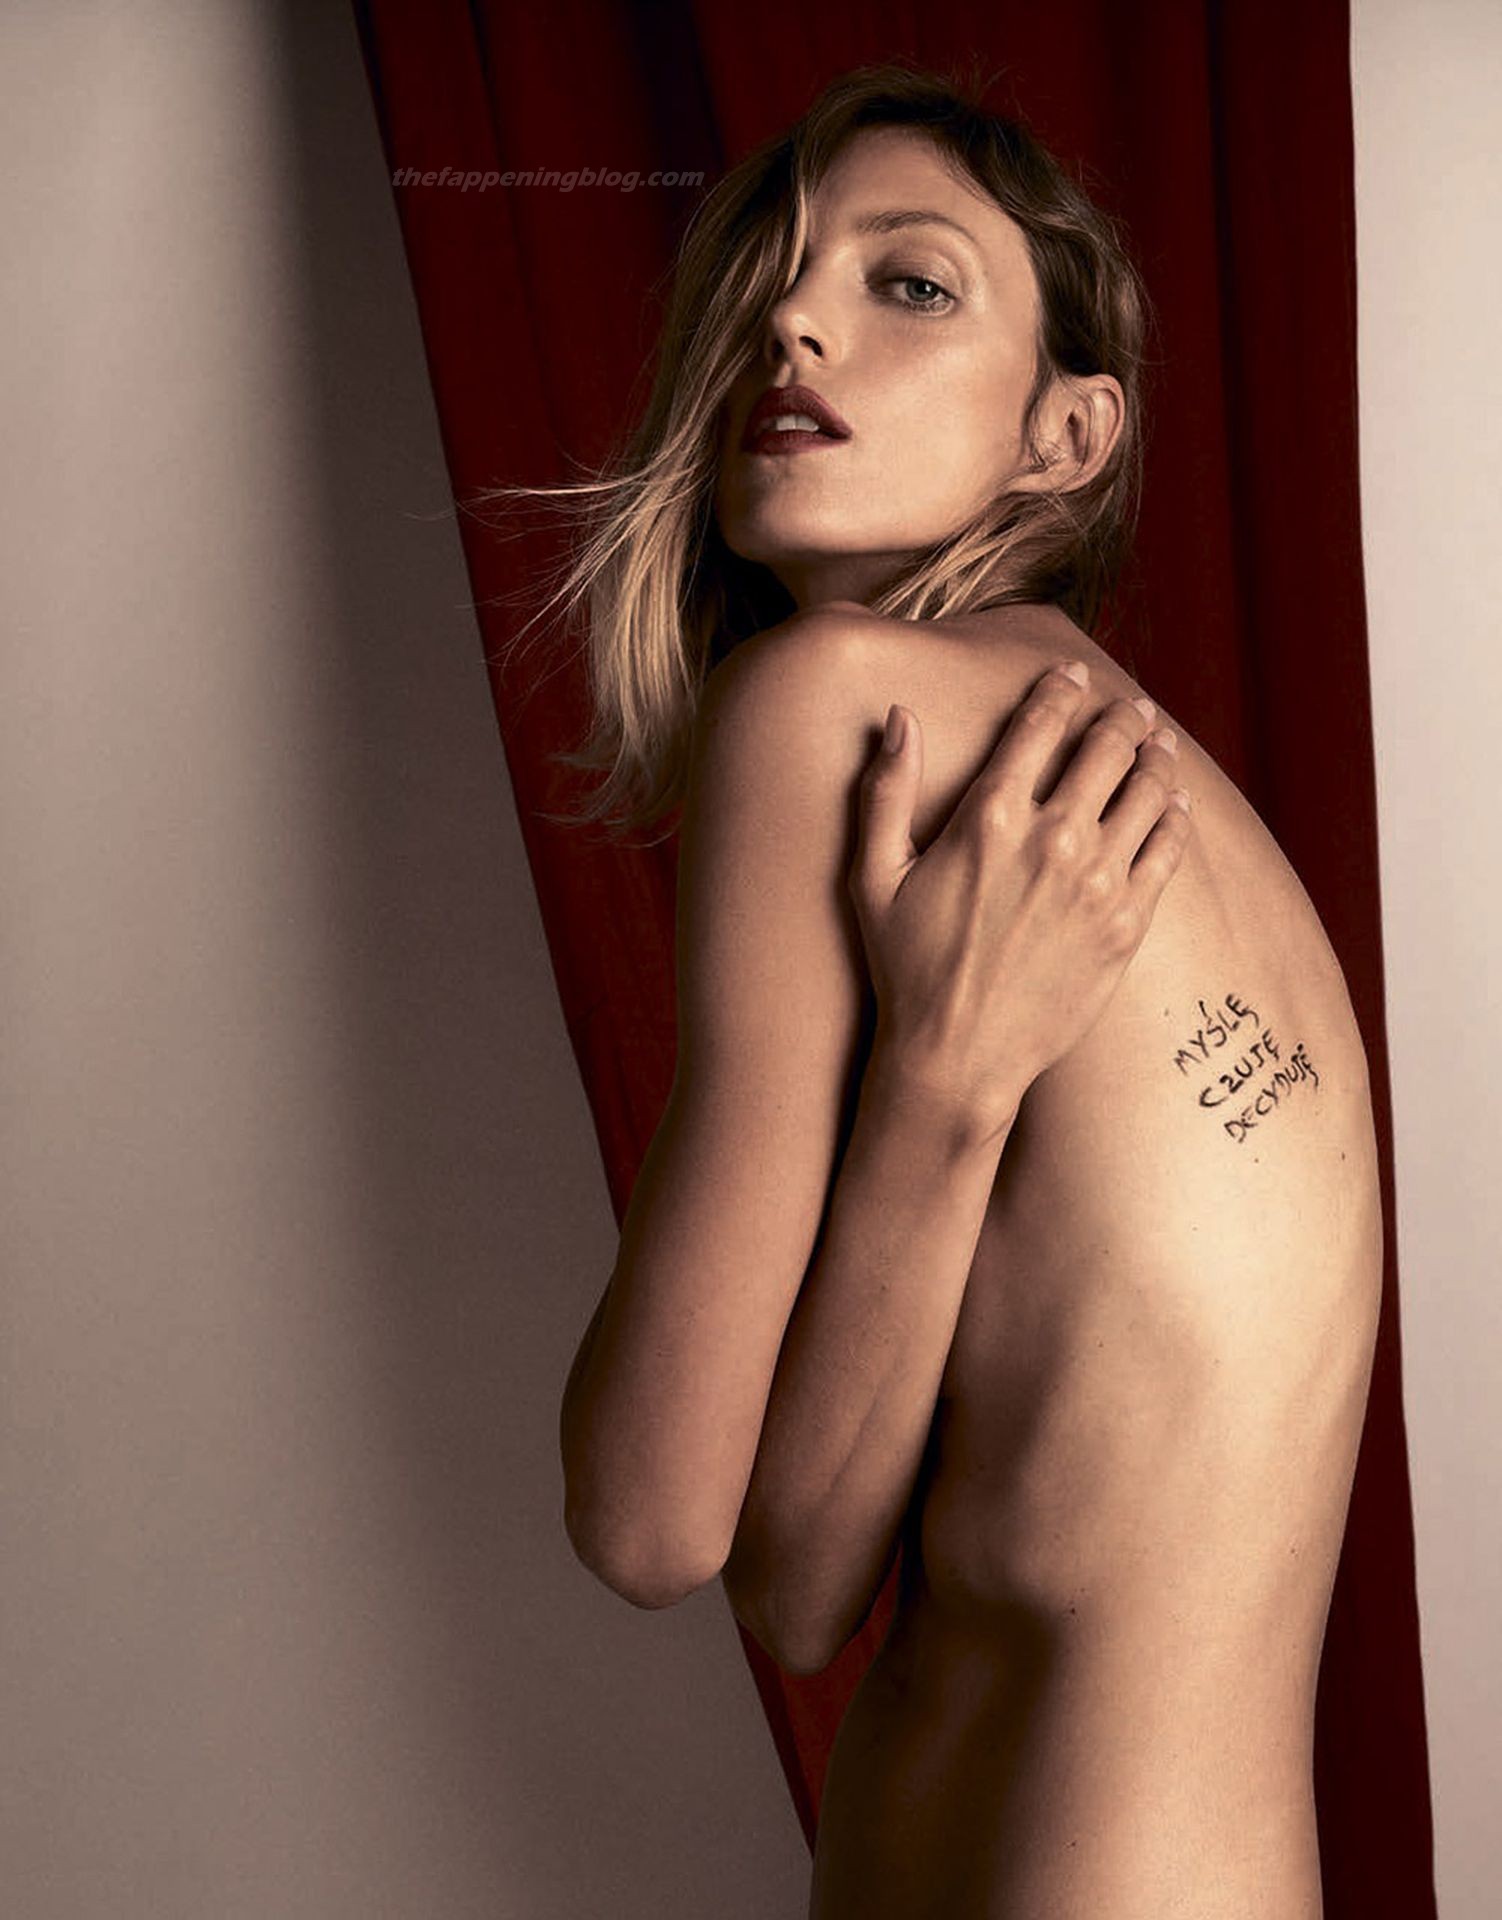 Anja Rubik Nude & Sexy - Vogue Poland (13 Photos)